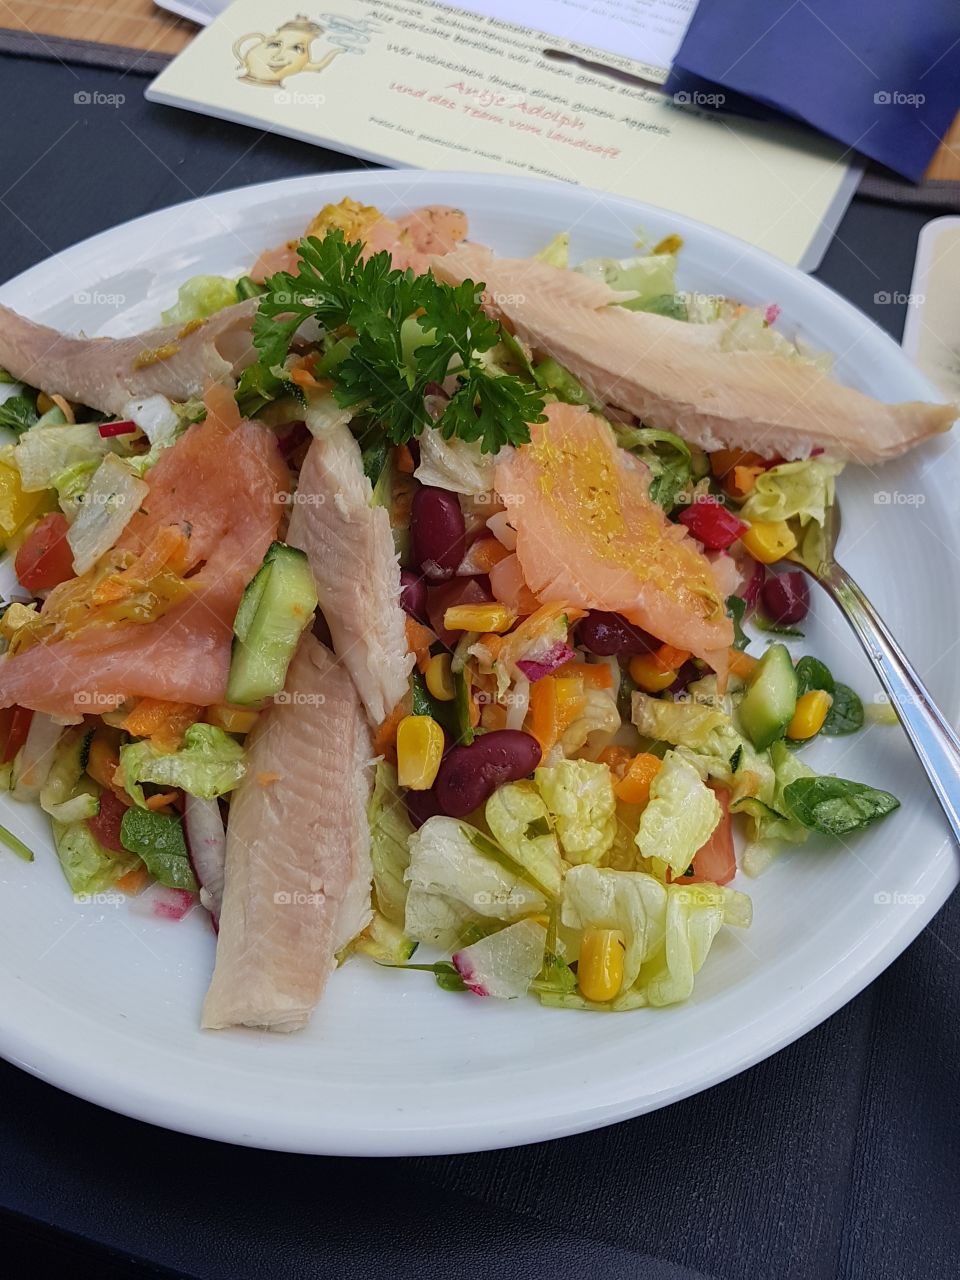 Im Sommer ist ein leichter Salat so erfrischend und lecker. Mit Fisch garniert, Mais als Topping, Baguette dazu. Grenzenlos variabel.